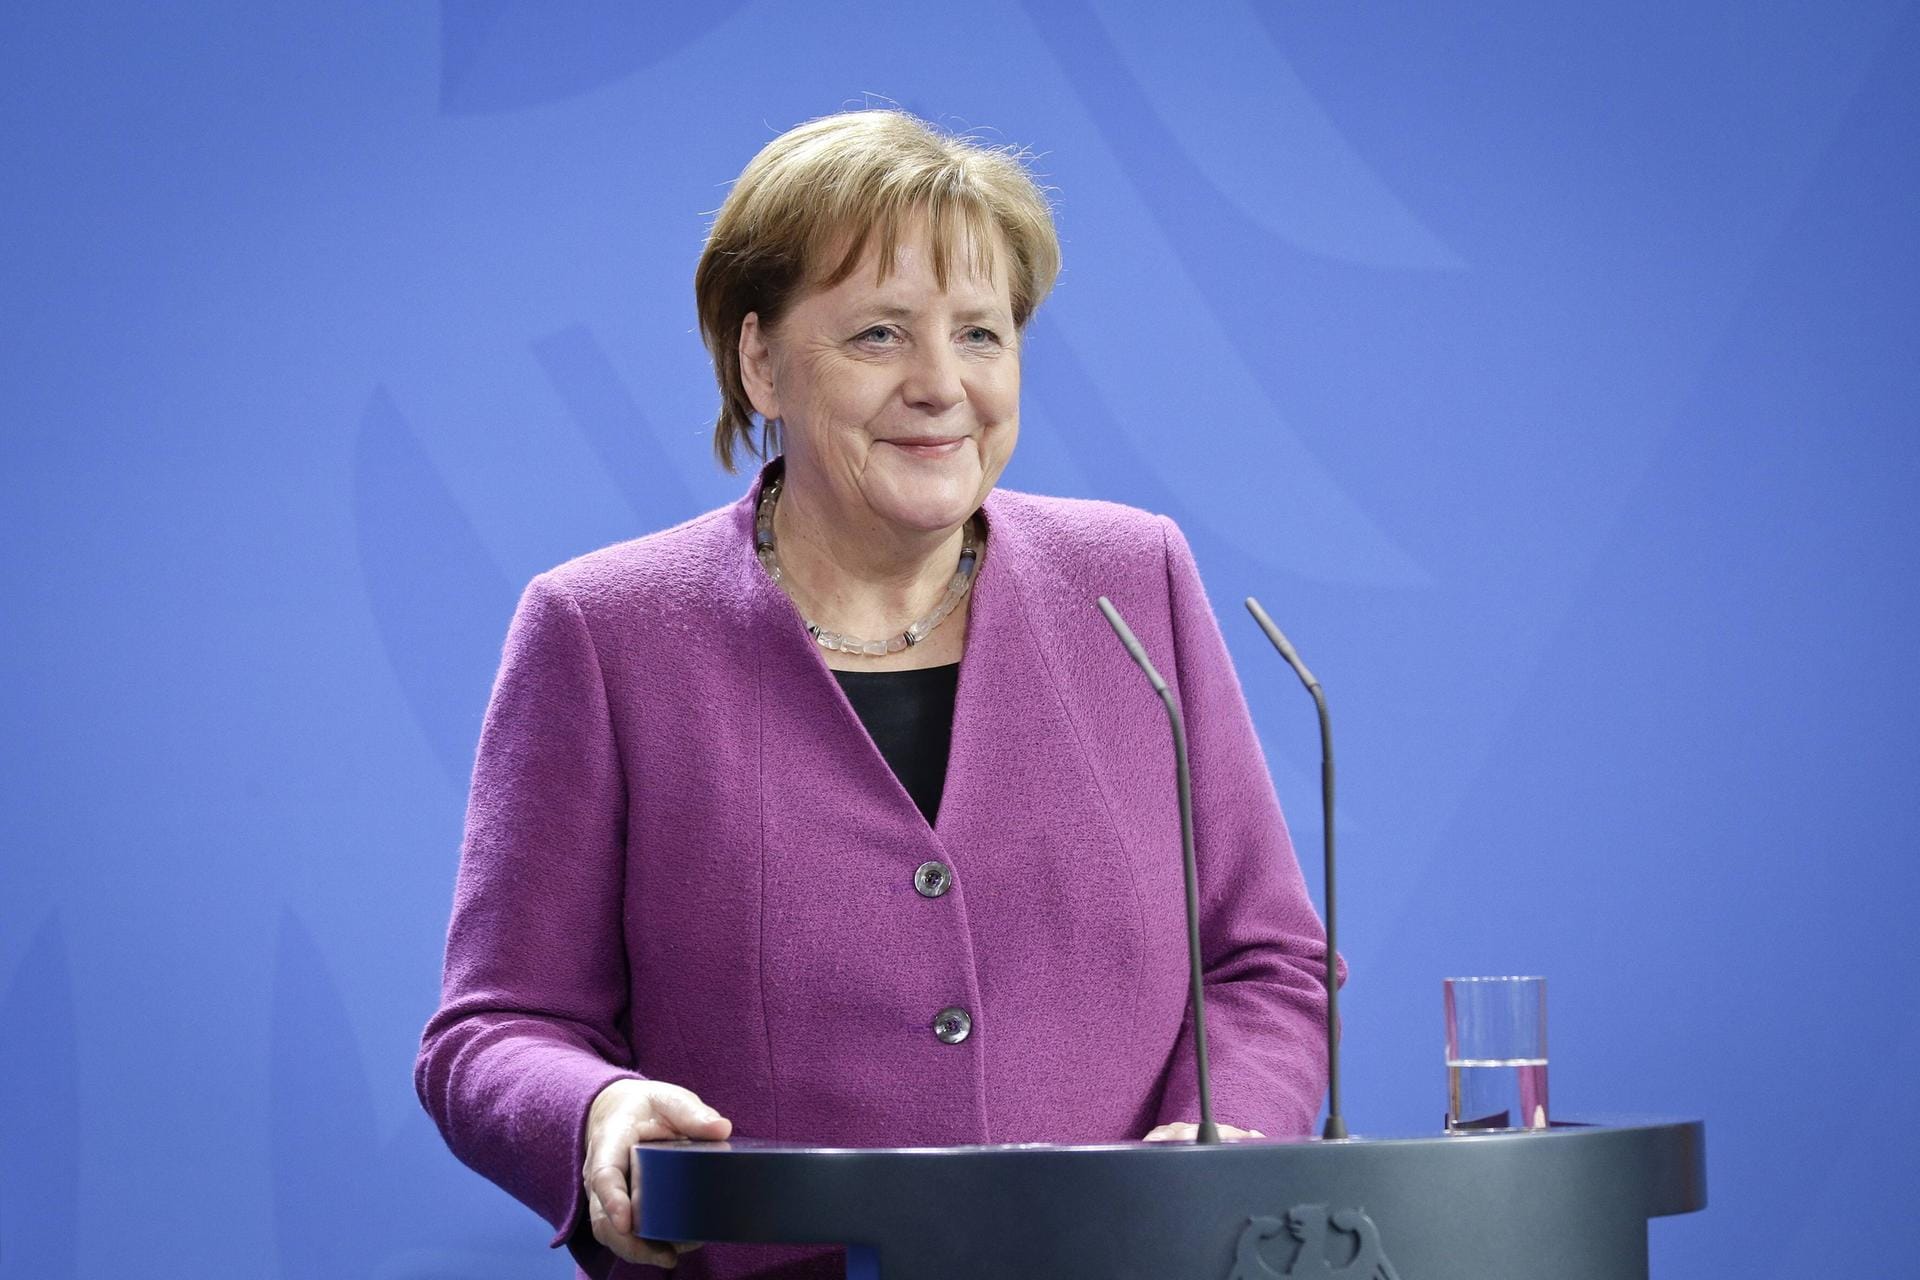 Kanzlerin Angela Merkel, Deutschland: Kanzlerin Angela Merkel bildet ein Gegengewicht zu Pence und der "Amerika zuerst"-Außenpolitik des mächtigsten Verbündeten Deutschlands. Die Kanzlerin wird ein Plädoyer für internationale Zusammenarbeit, den sogenannten Multilateralismus, entgegensetzen.